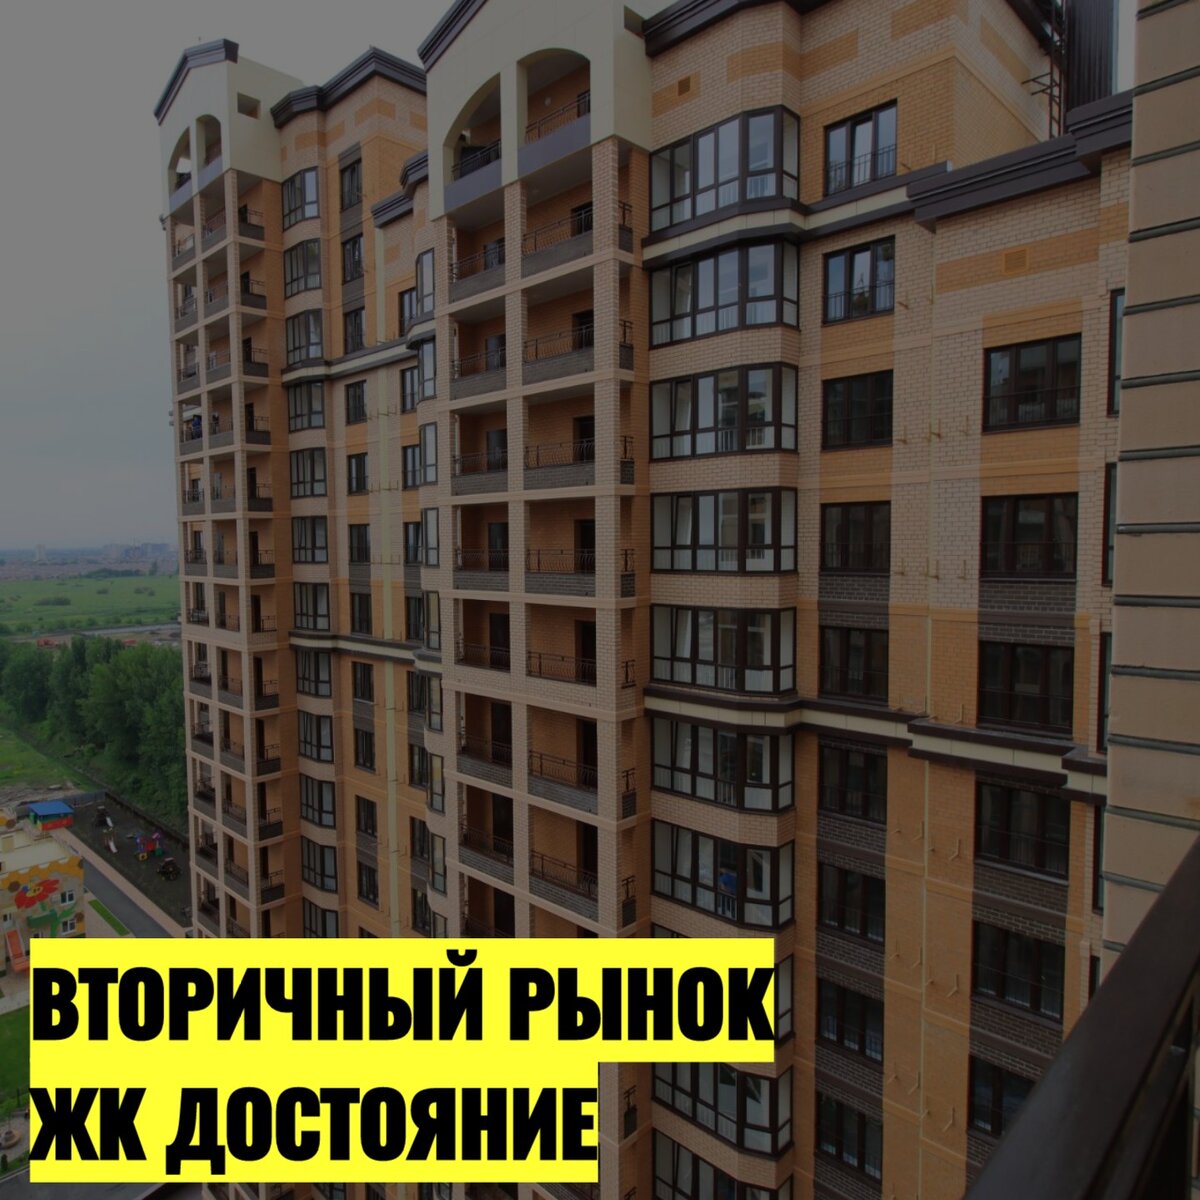 Сейчас посмотрим с Вами на вторичный рынок недвижимости города Краснодар в ЖК Достояние. На момент публикации поскандалим все Объекты в продаже.